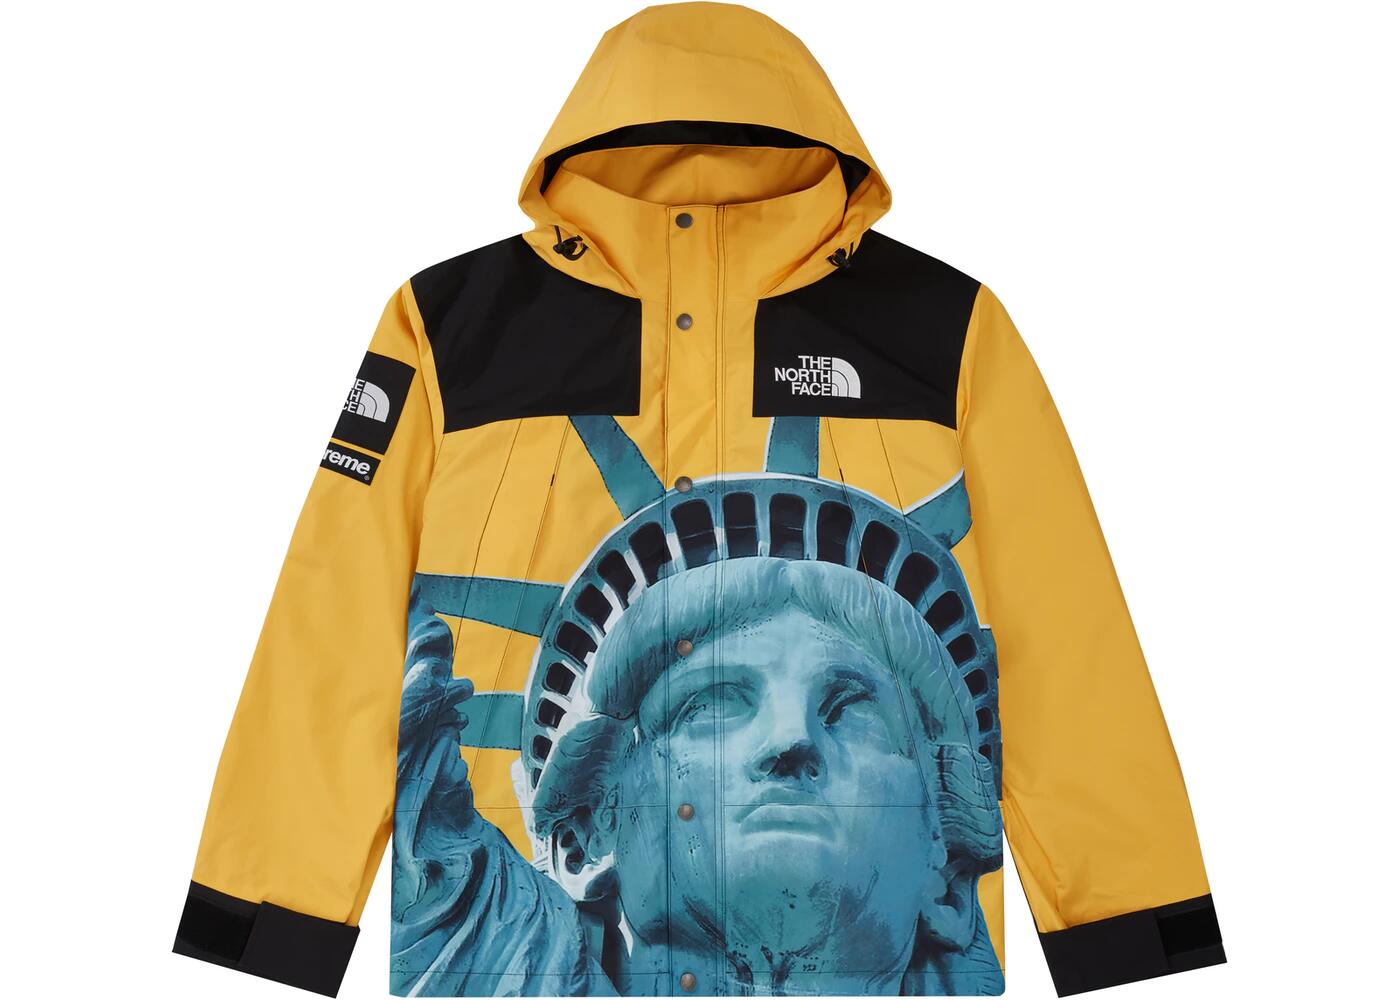 【国内配送】Supreme / The North Face Statue of Liberty Mountain Jacket Yellow シュプリーム ザ ノース フェイス スタチュー オブ リバティ マウンテン ジャケット イエロー 選べるサイズ